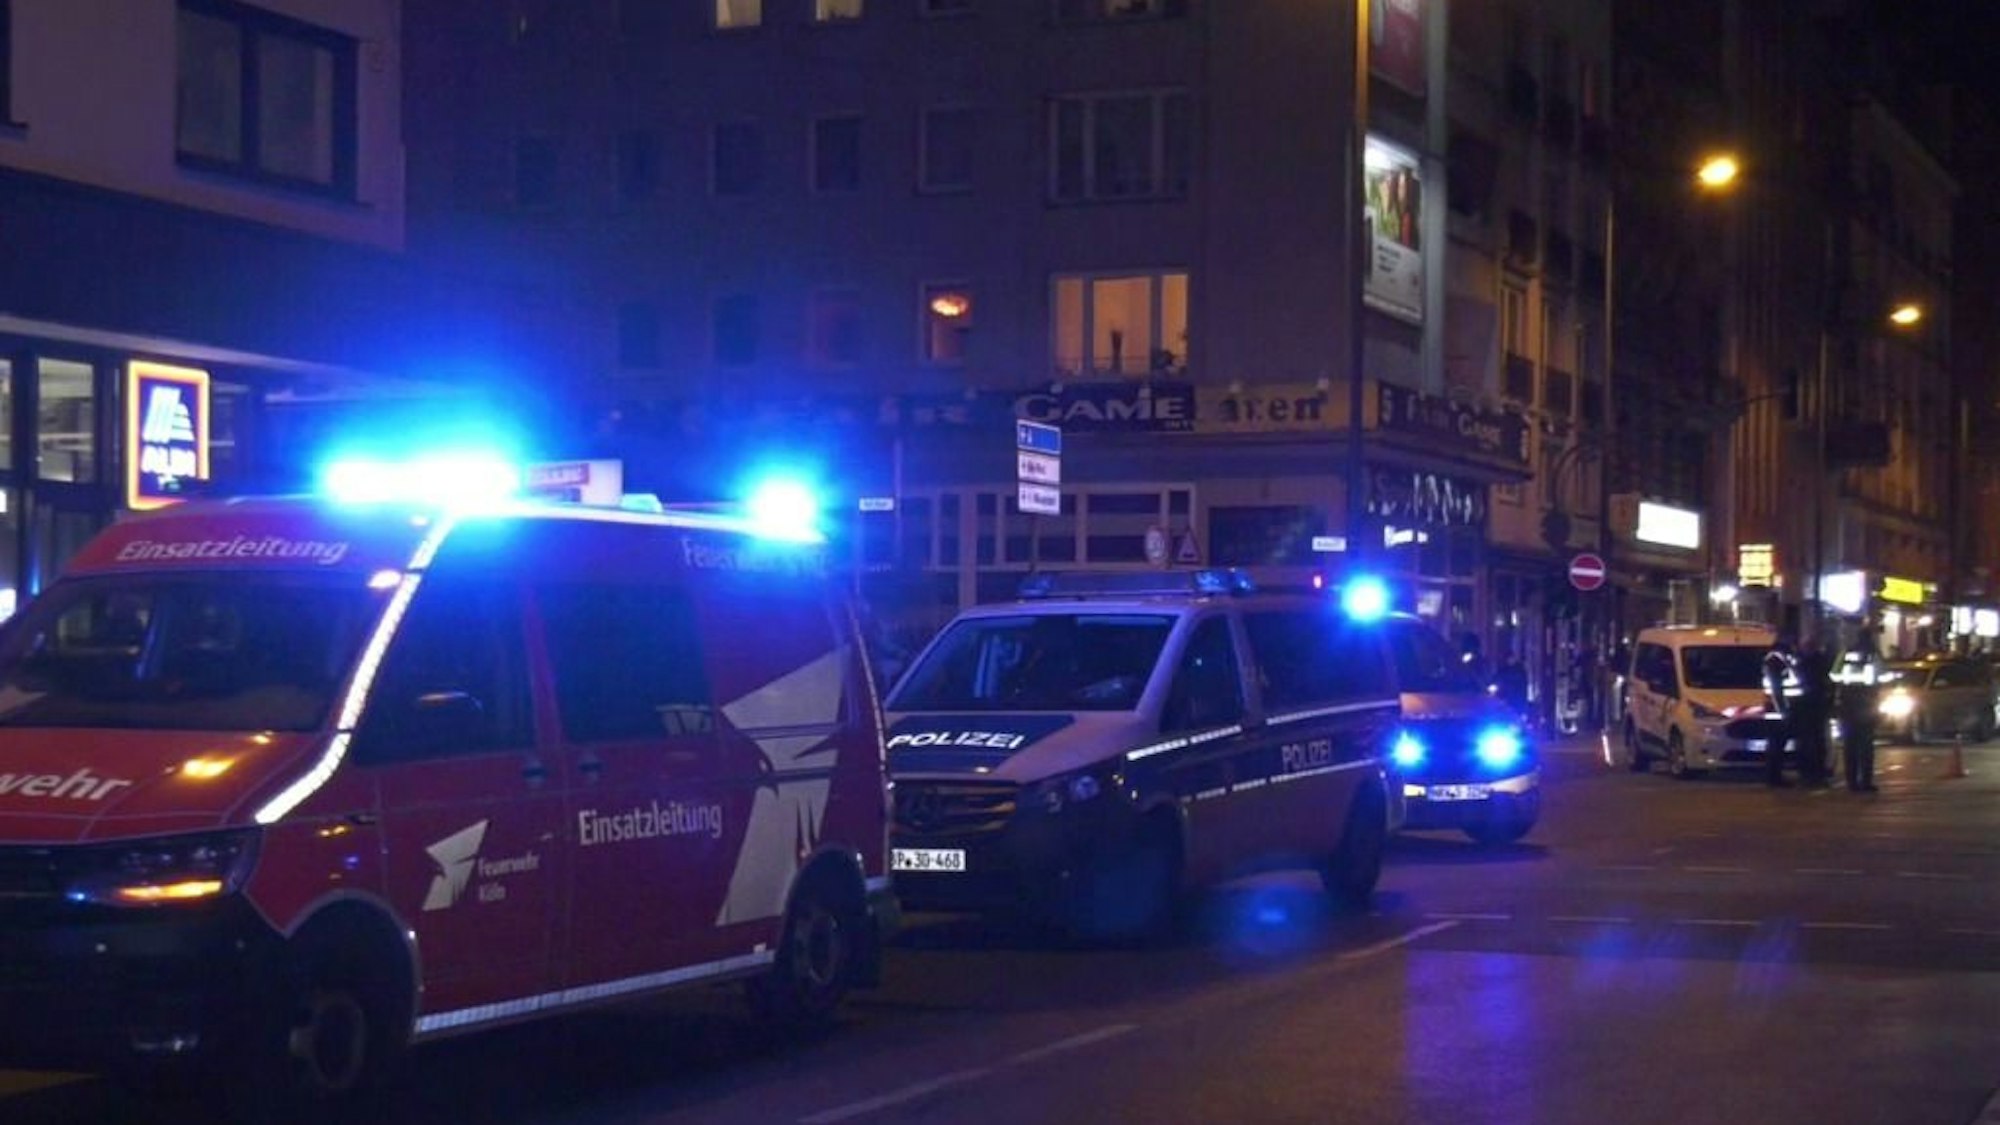 Einsatzfahrzeuge der Polizei stehen auf einer Straße.Nach einer gemeldeten Messerstecherei in einem Hotel im Kölner Ursulaviertel ist es zu einem größeren Einsatz von Polizei und Rettungsdienst gekommen.